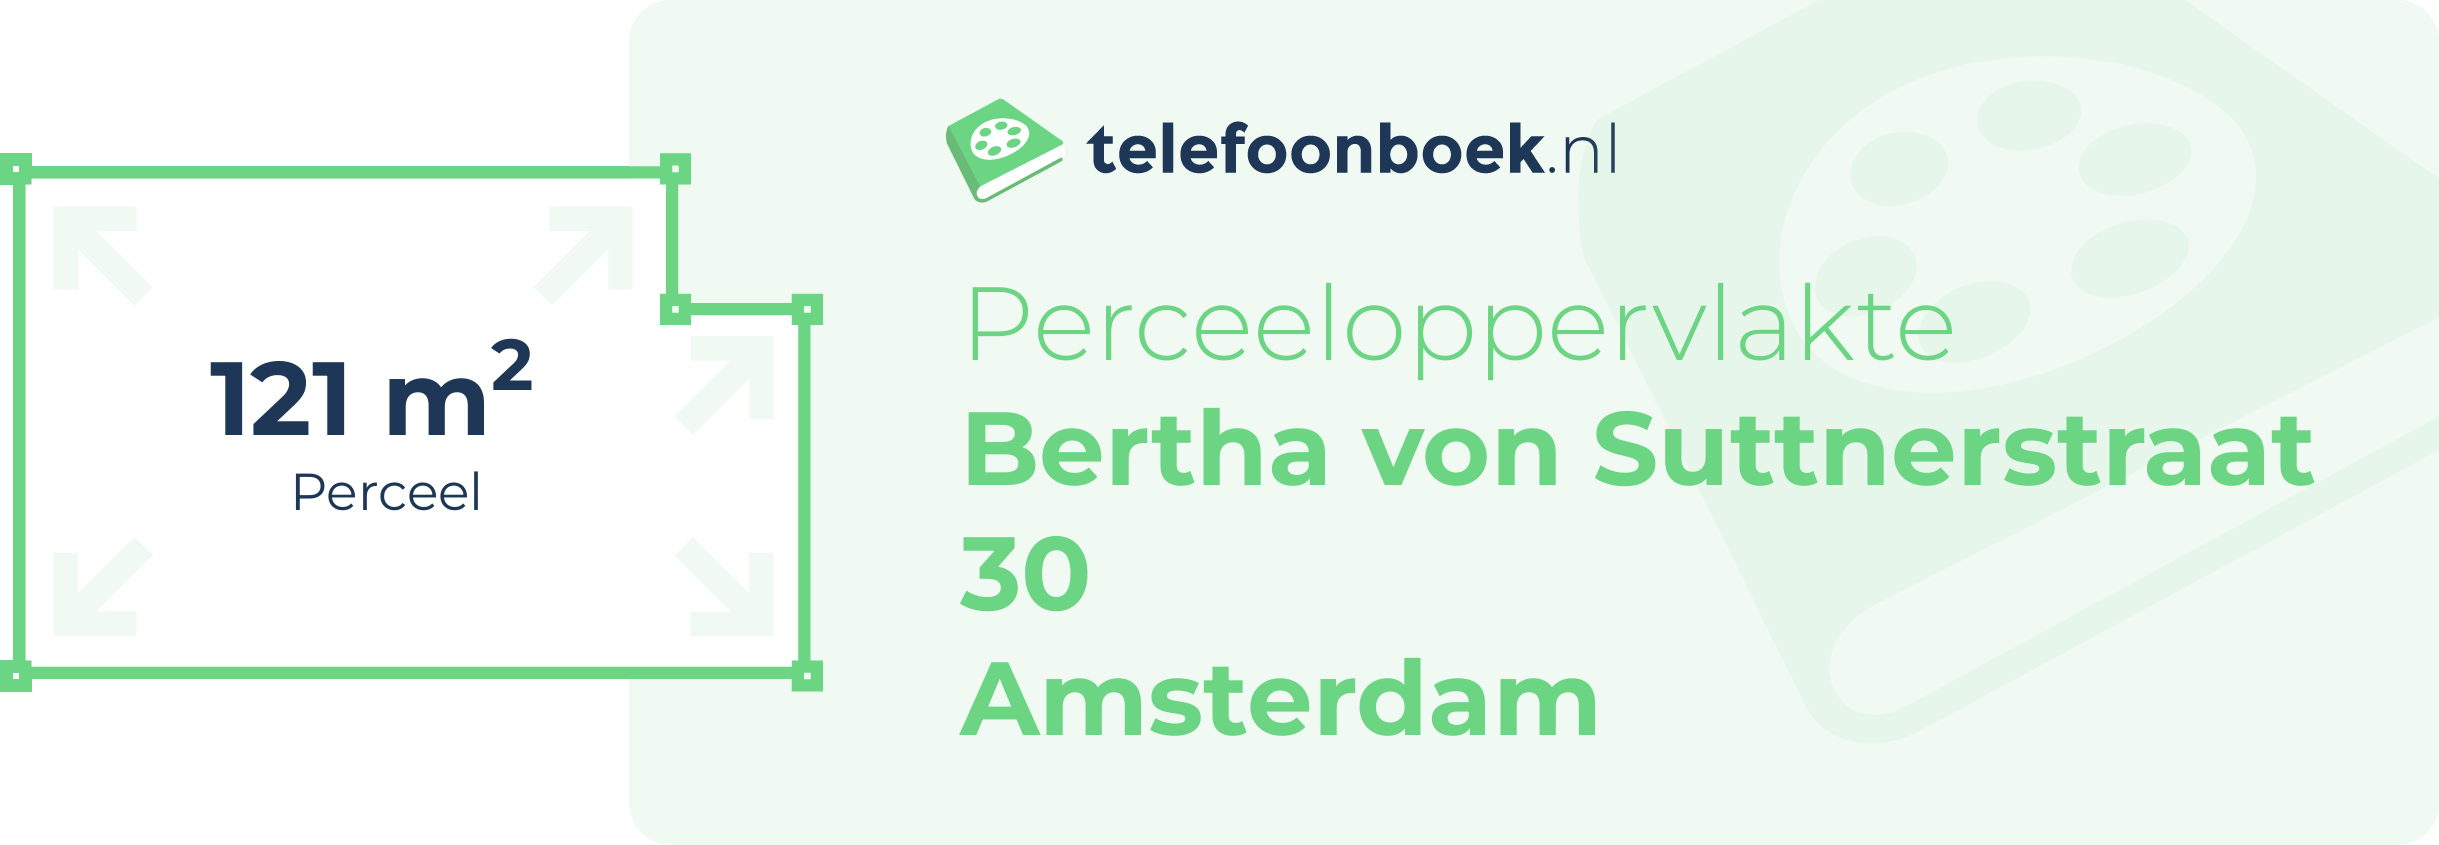 Perceeloppervlakte Bertha Von Suttnerstraat 30 Amsterdam